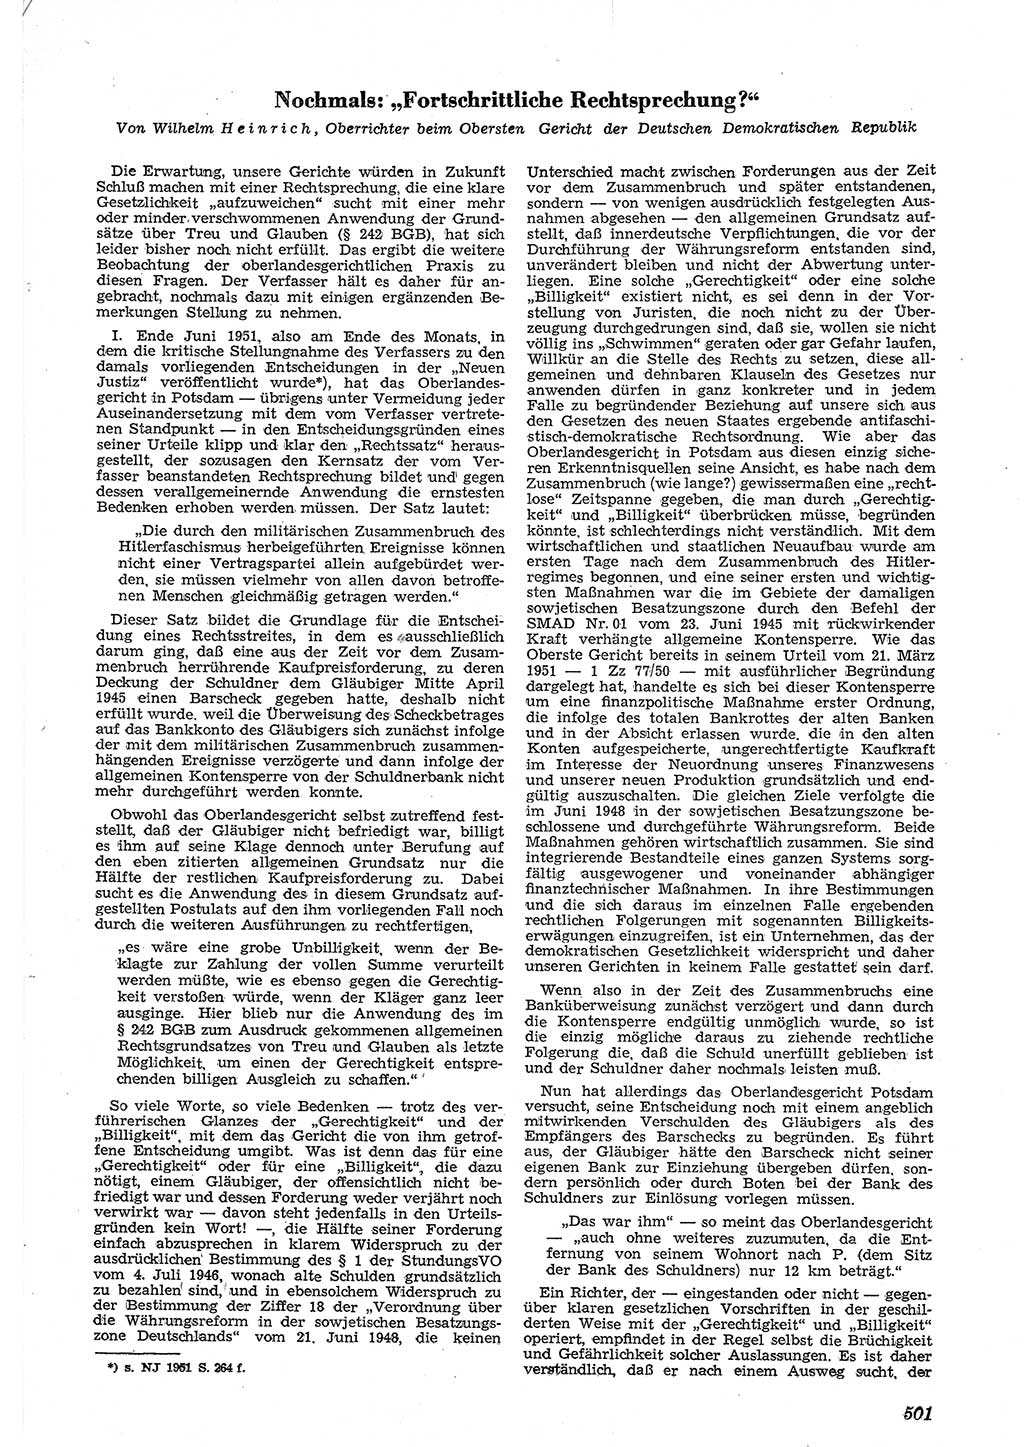 Neue Justiz (NJ), Zeitschrift für Recht und Rechtswissenschaft [Deutsche Demokratische Republik (DDR)], 5. Jahrgang 1951, Seite 501 (NJ DDR 1951, S. 501)